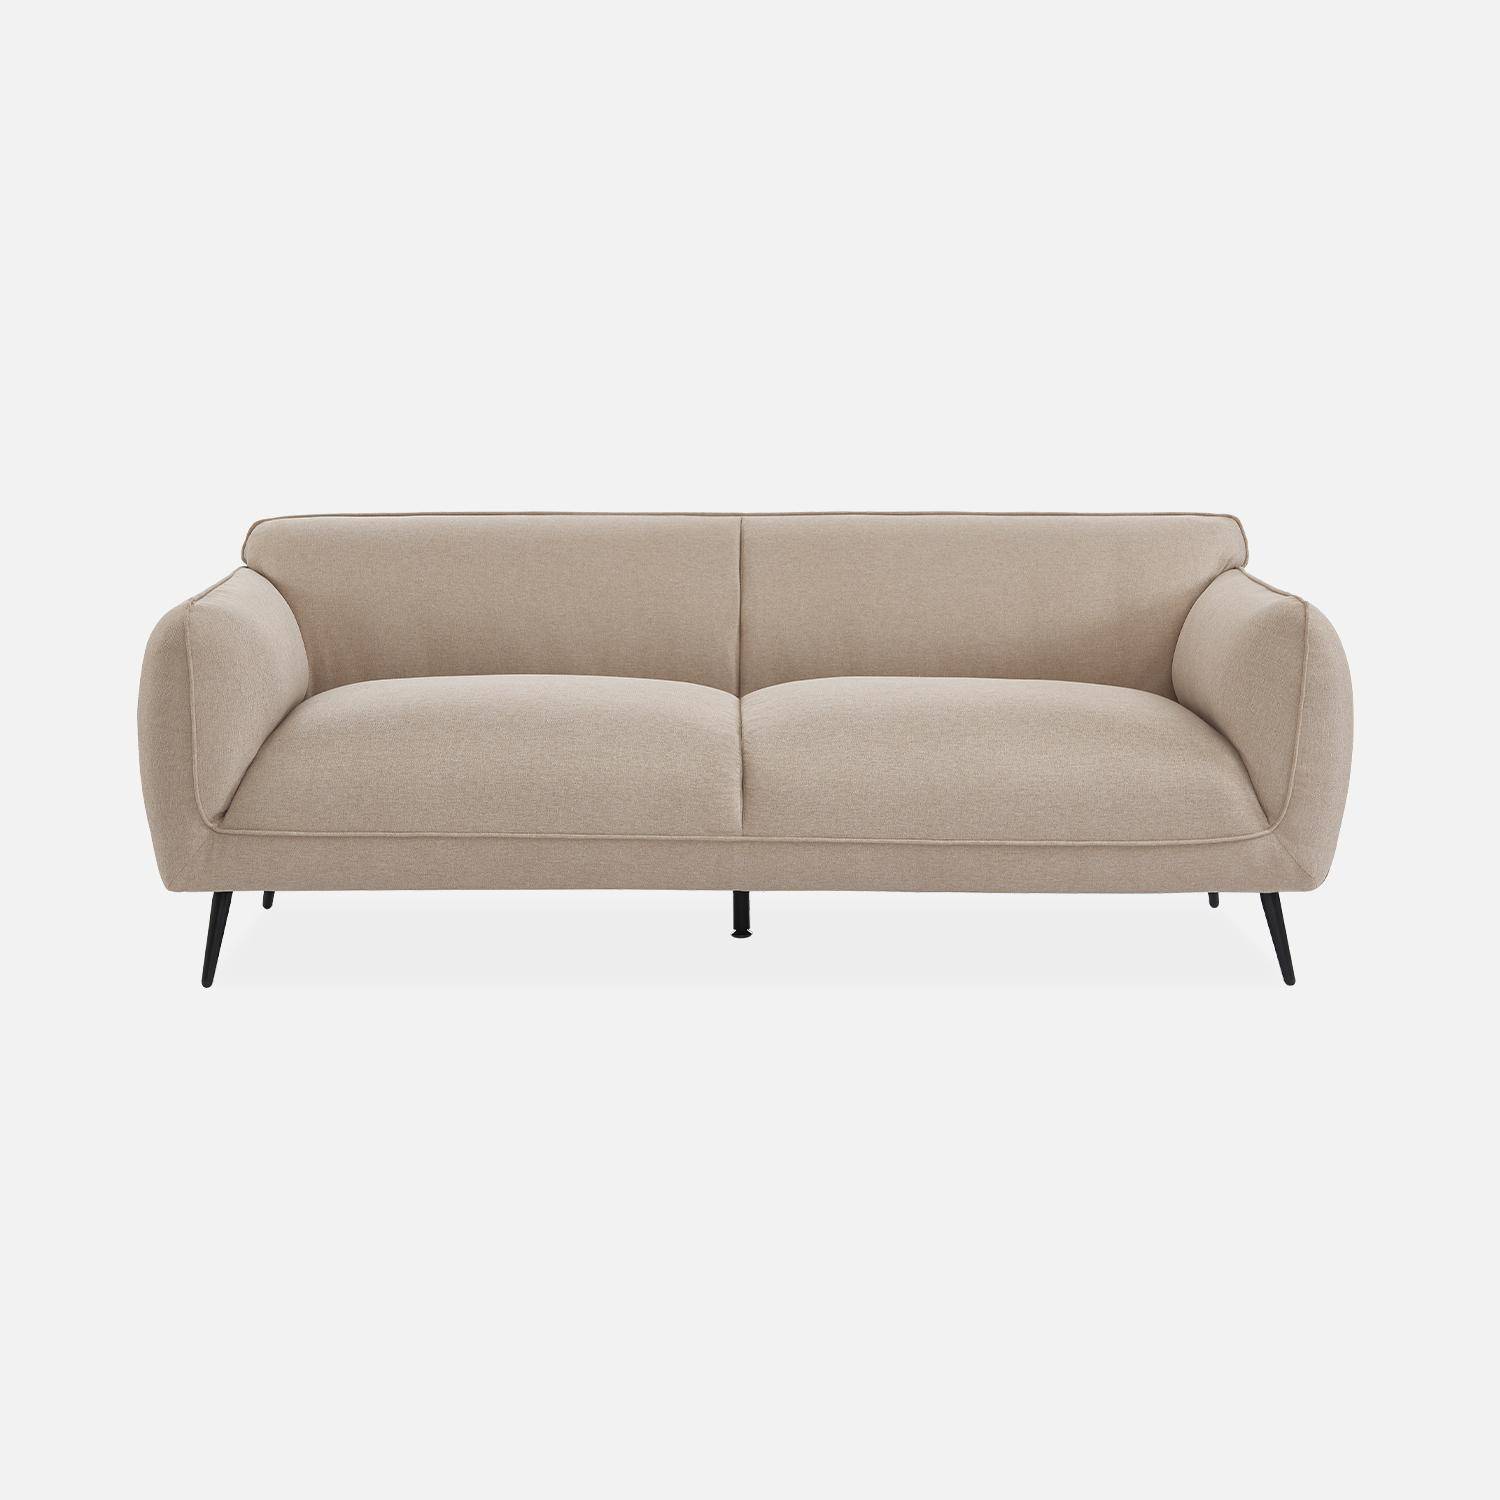 3-Sitzer-Sofa mit Stoffbezug in beige und schwarzen Metallfüßen - Soft,sweeek,Photo4